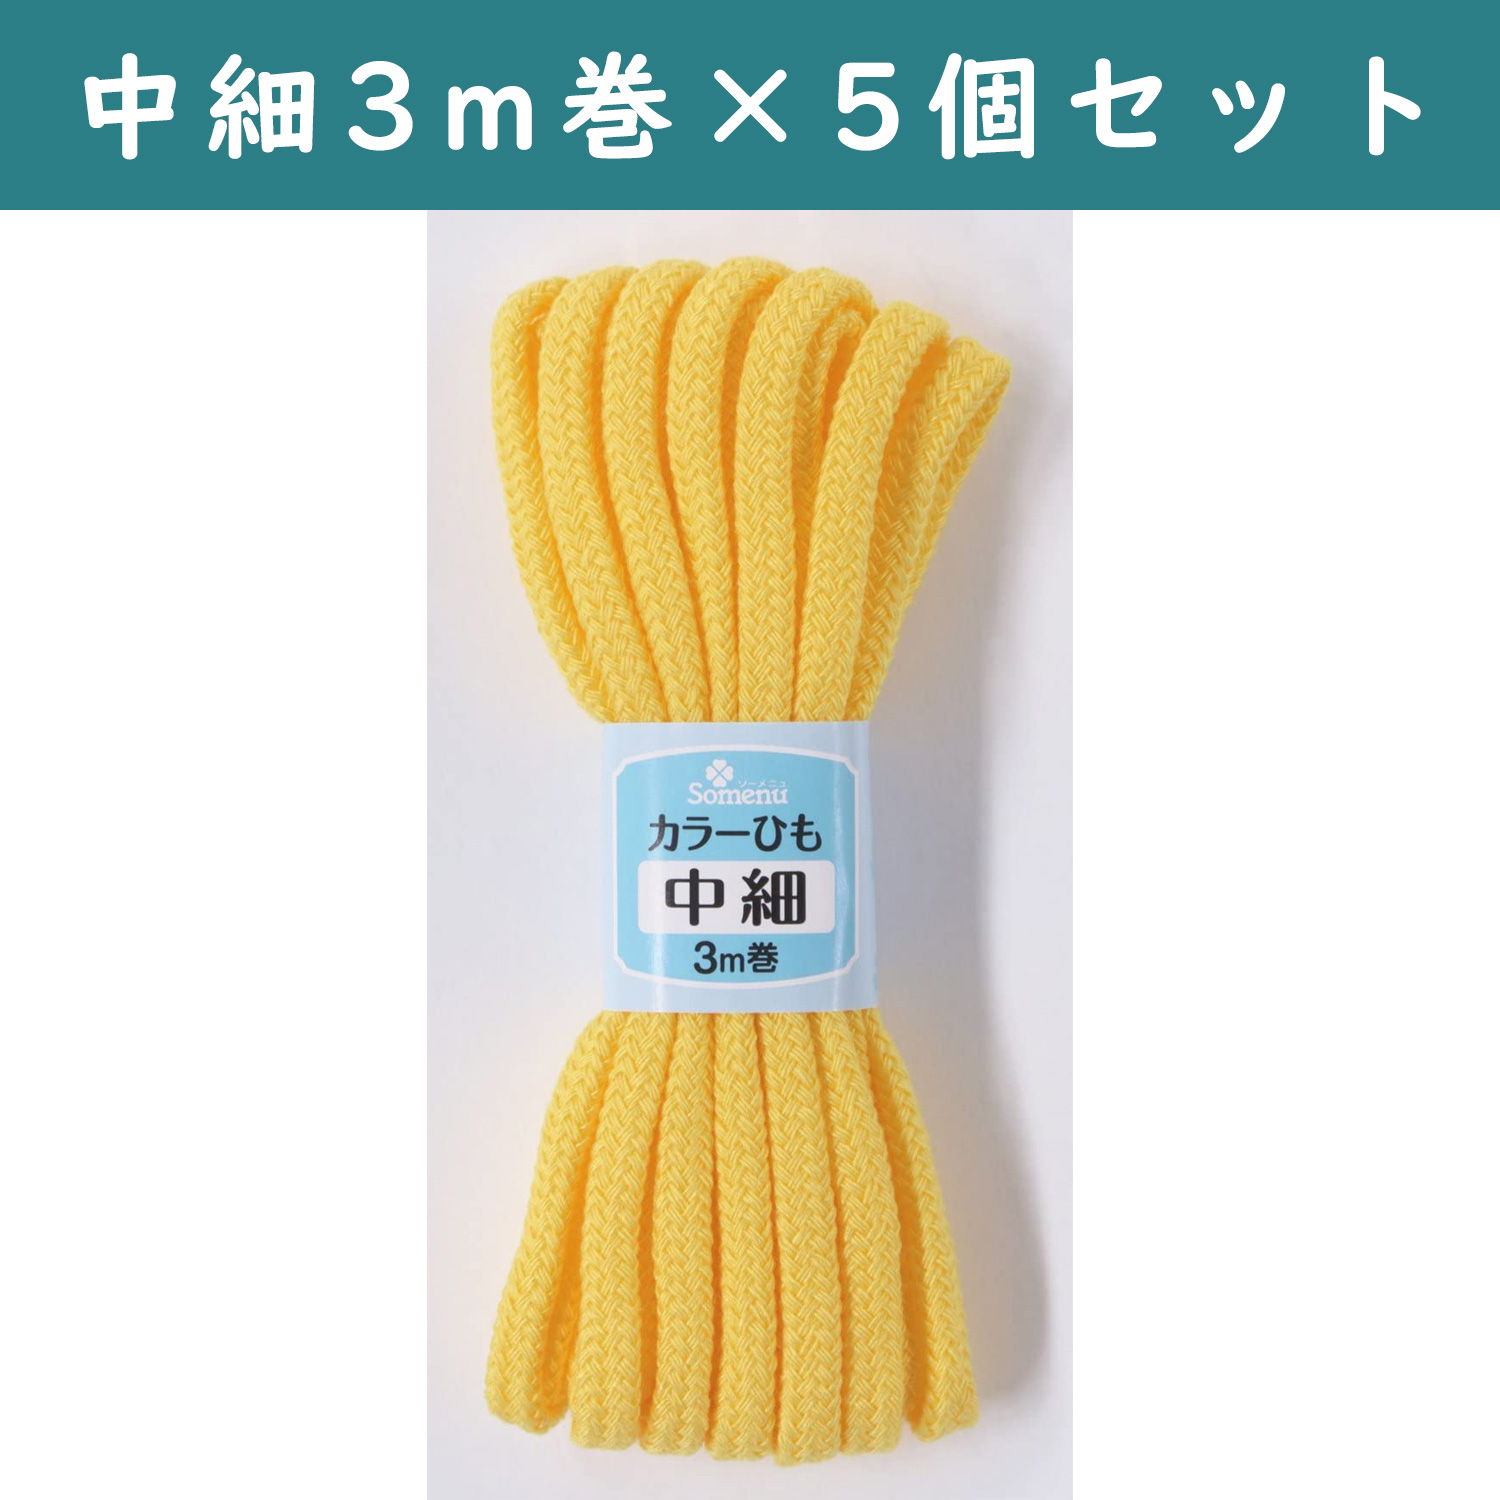 ■【5個】CL26-147-5set カラーひも 中細 3m巻 黄色 5個セット (セット)